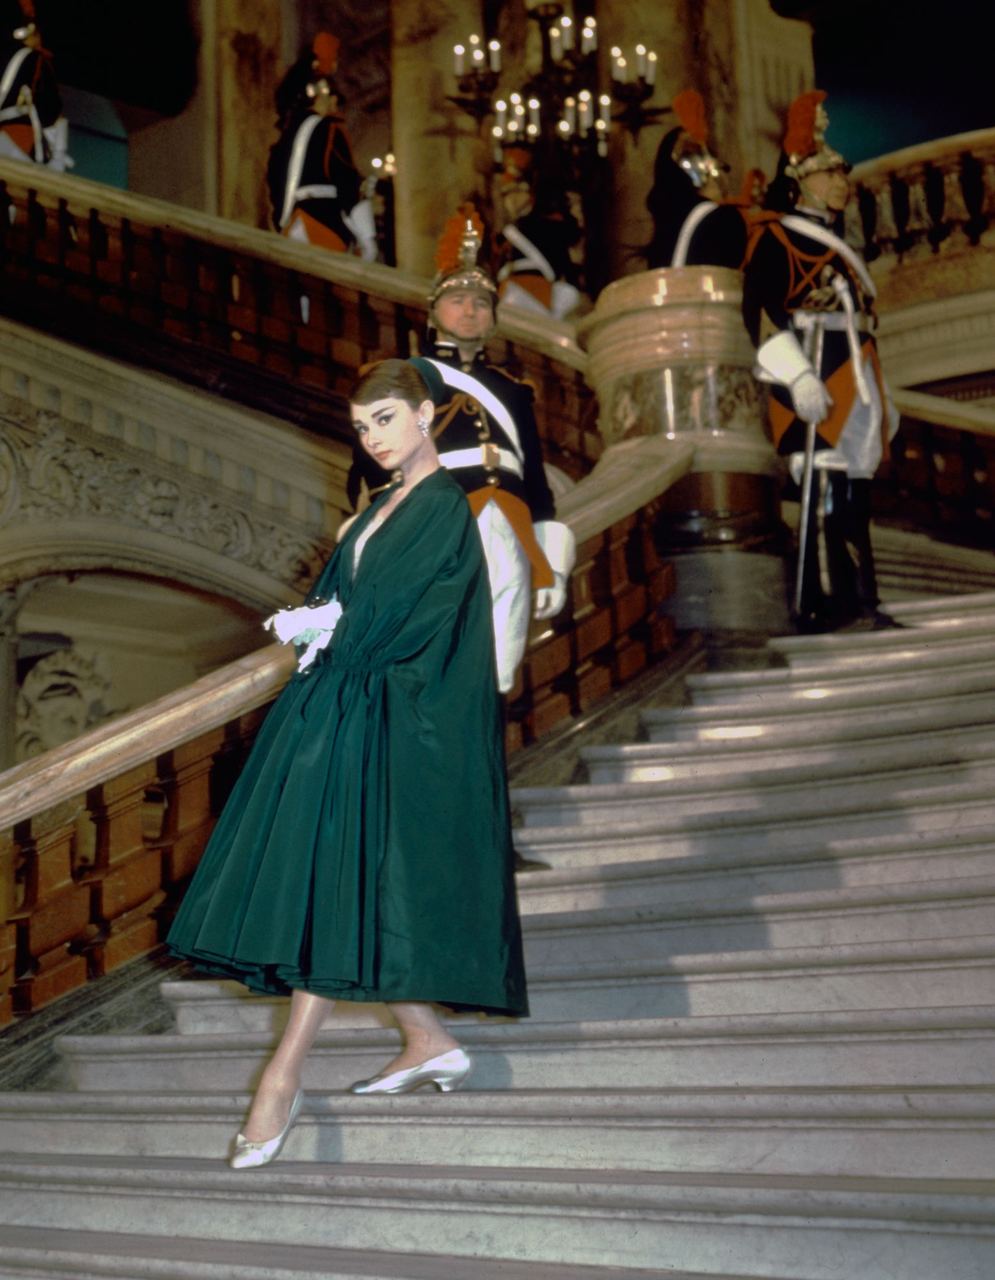 Hơn 60 năm nhìn lại, outfit của Audrey Hepburn trong &quot;Funny Face&quot; vẫn đẹp kinh điển, thậm chí hợp mốt hiện tại - Ảnh 8.